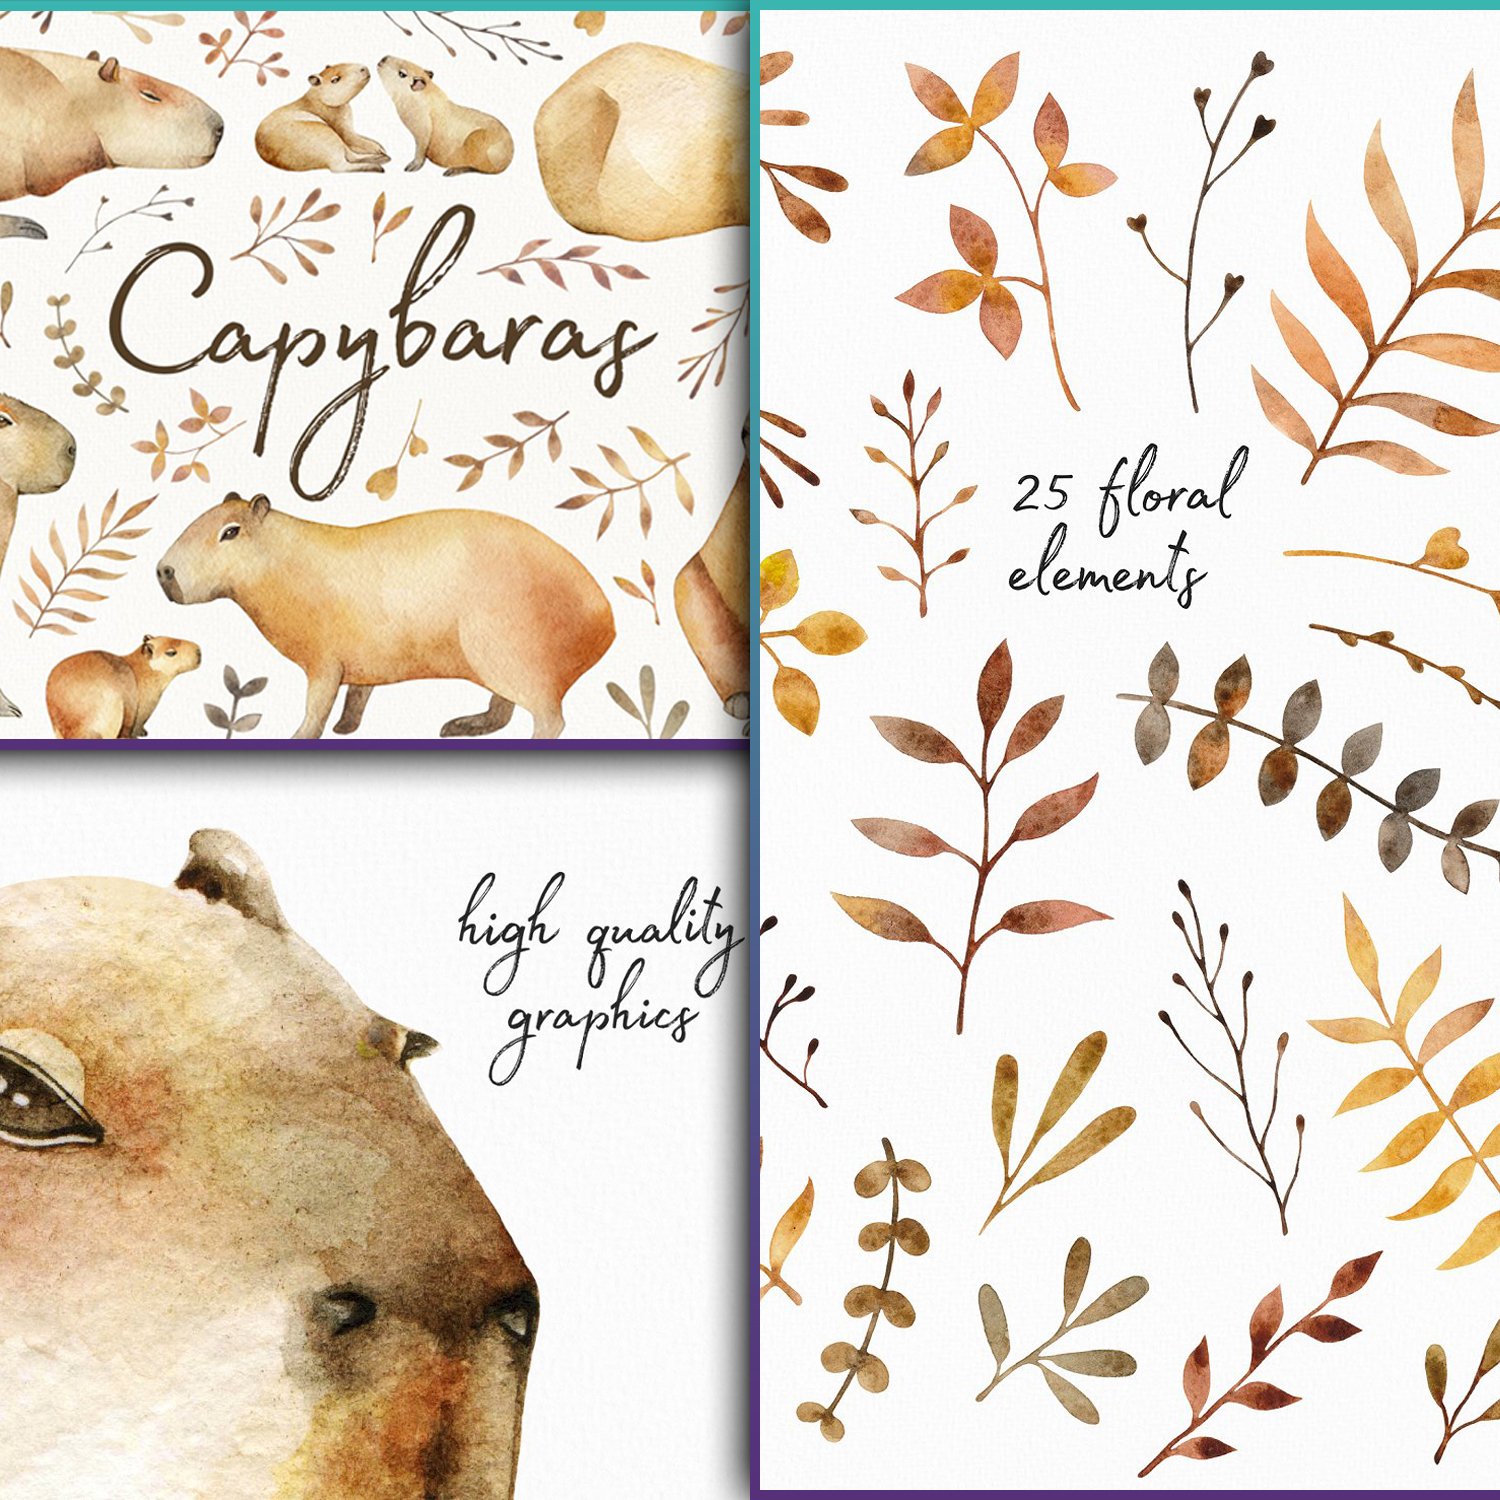 Preview capybaras watercolor set.